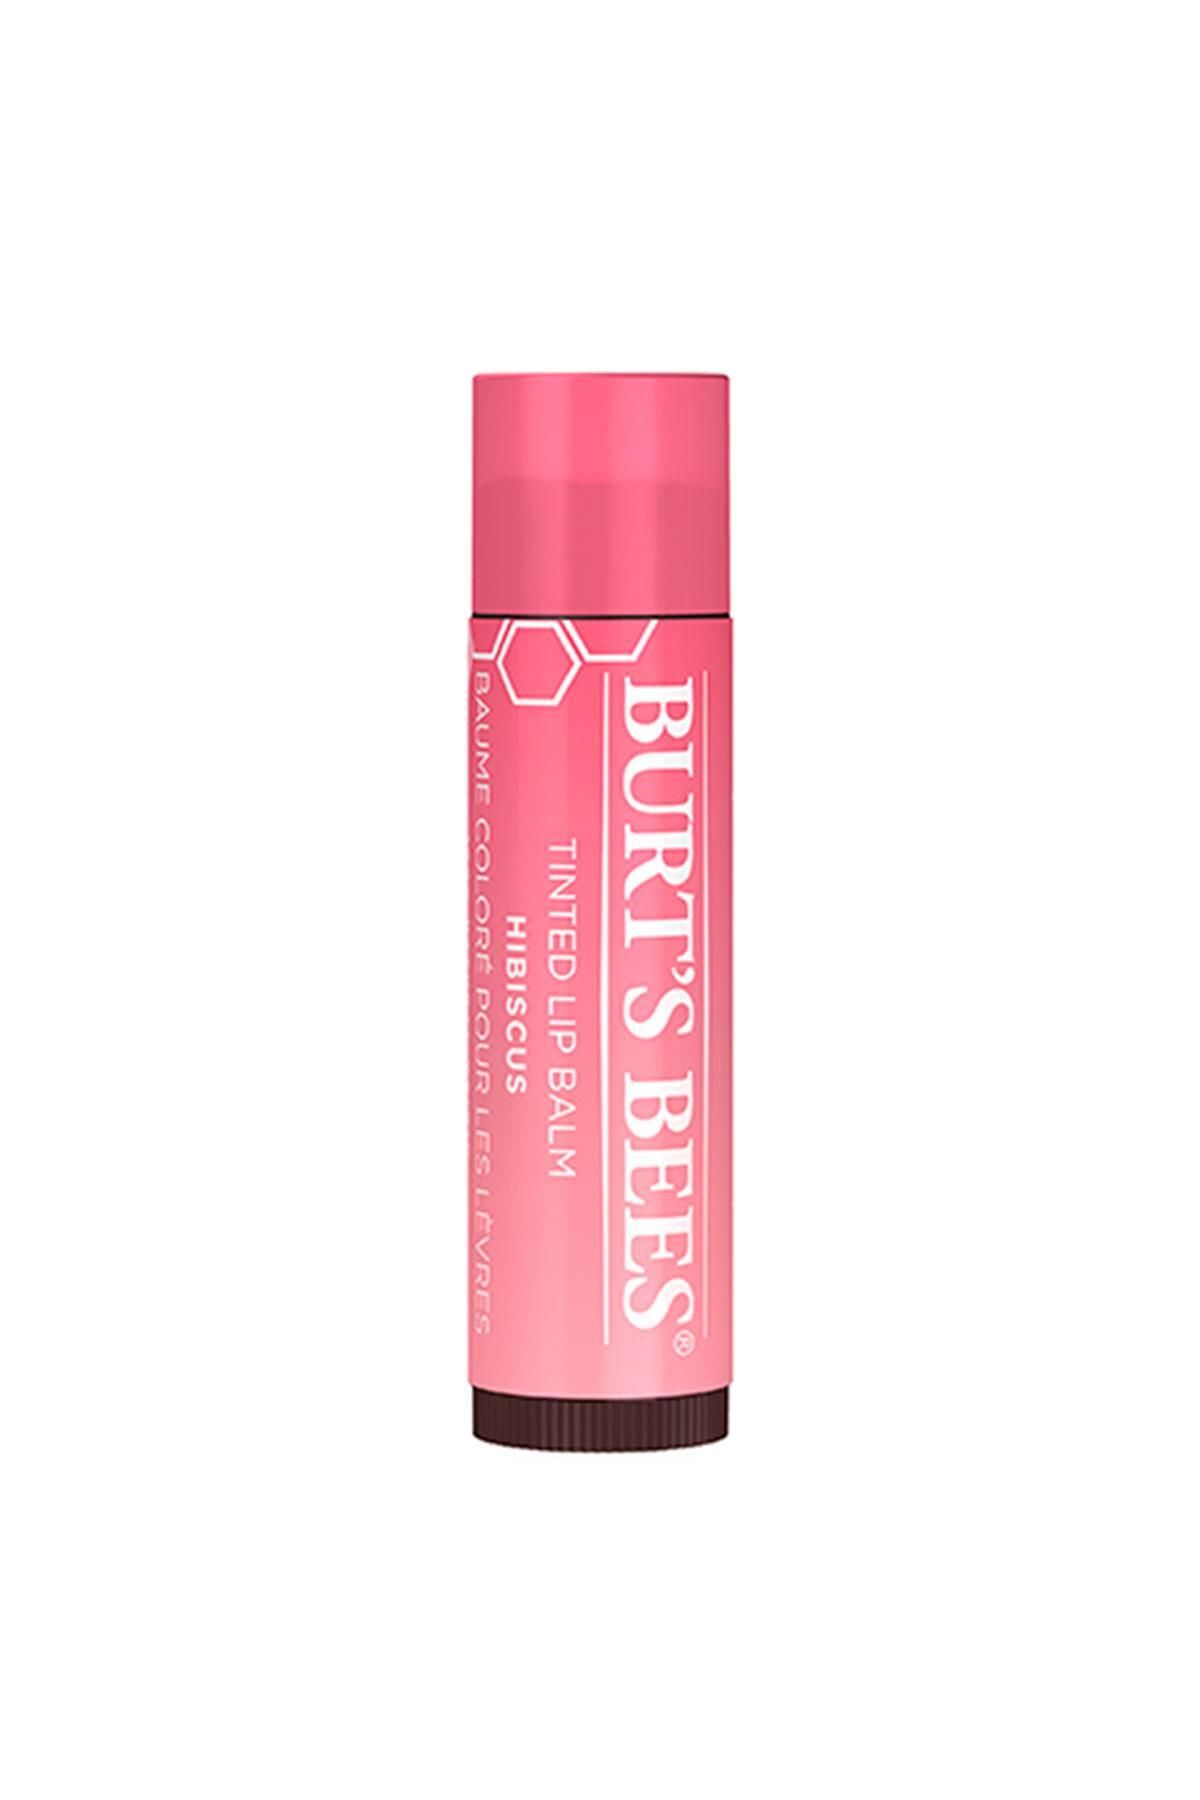 Burt's Bees Renkli Dudak Bakımı Gül Kurusu - Tinted Lip Balm Hibiscus 4,25 G